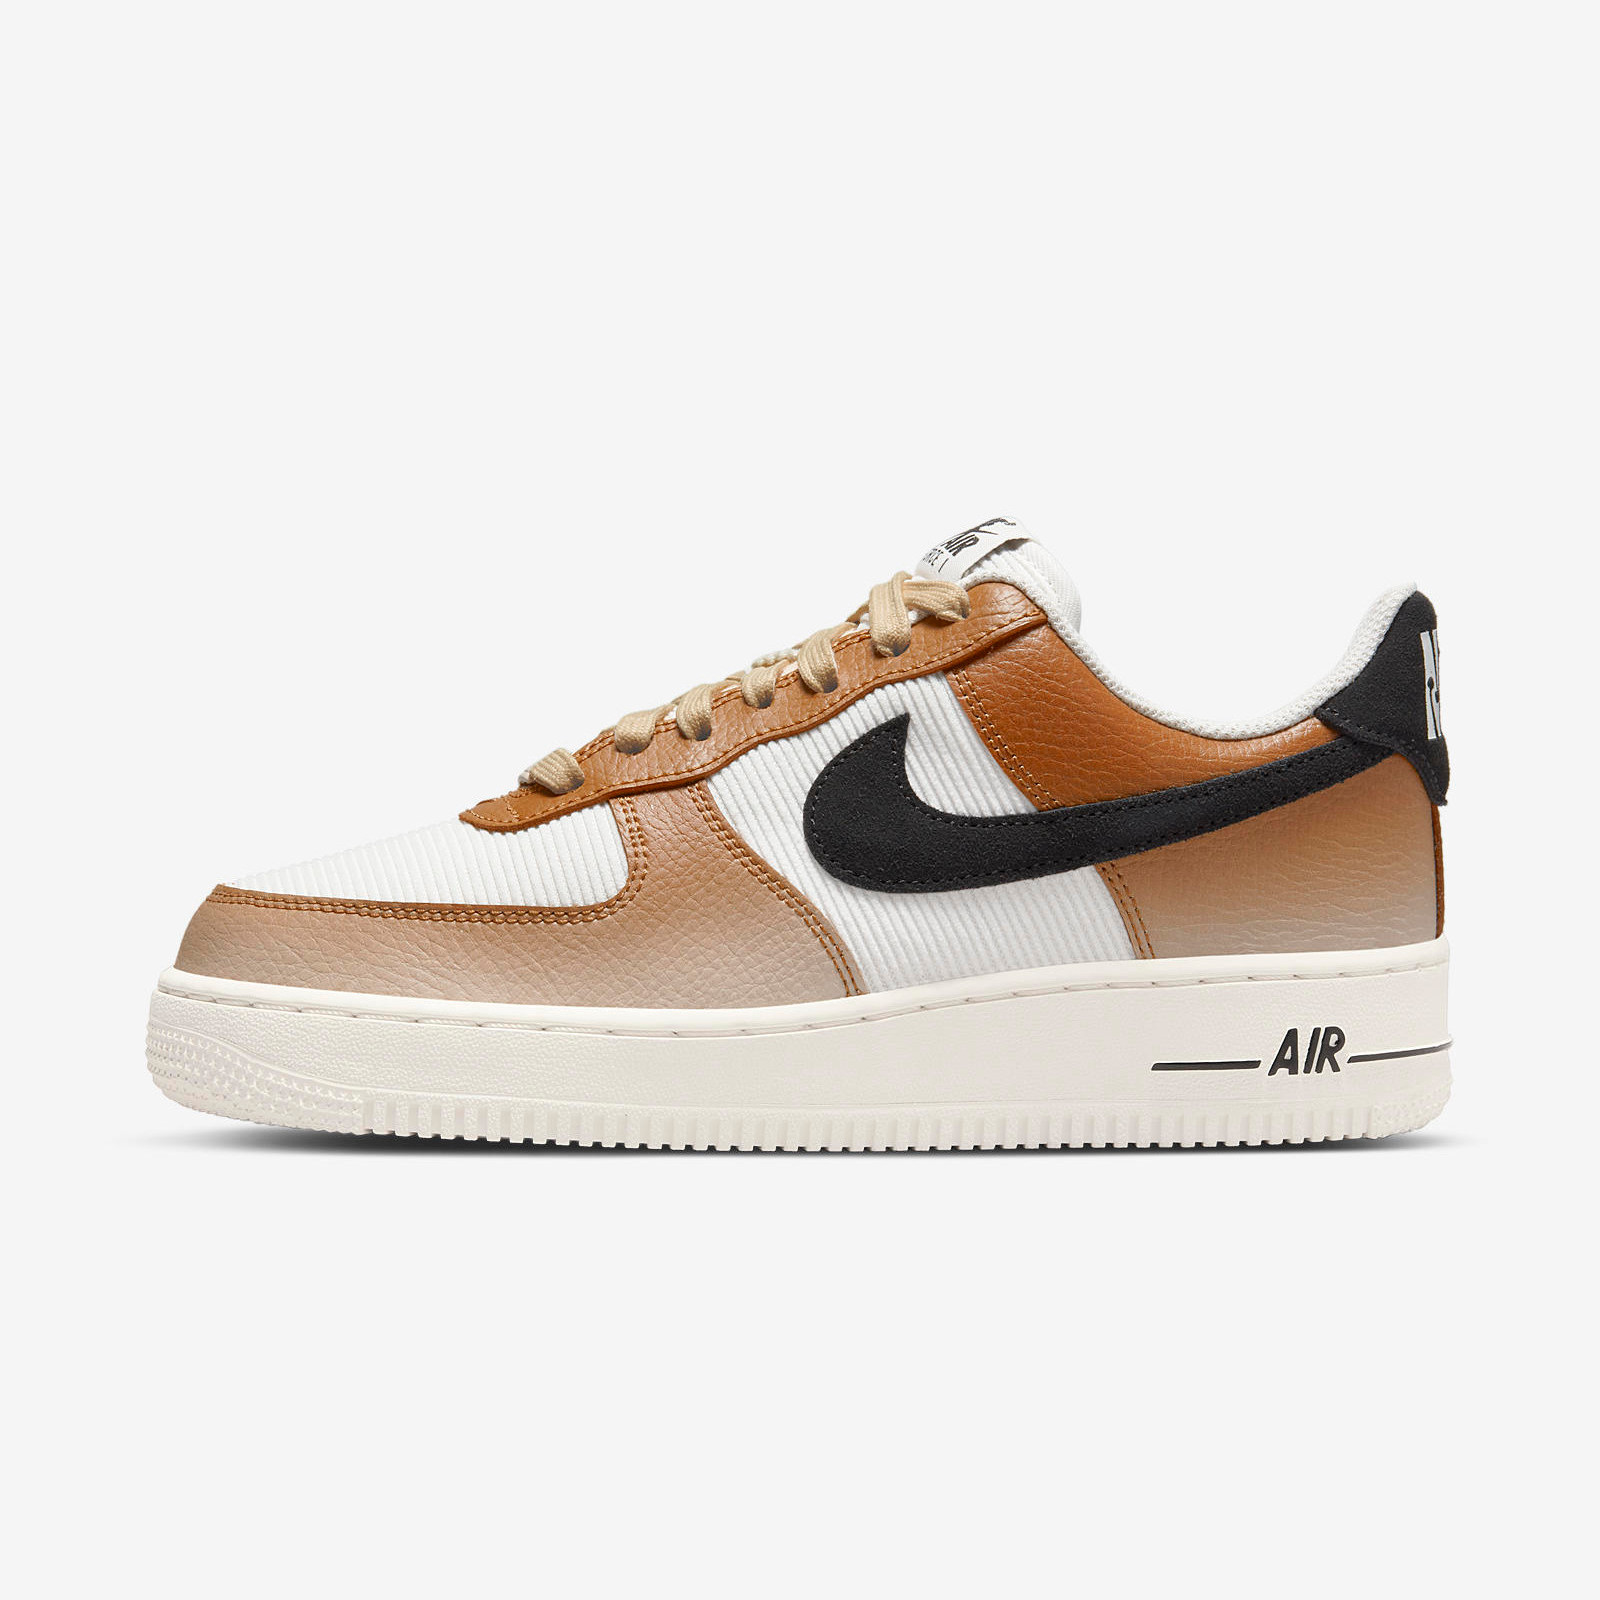 Nike Air Force 1 07
« Ale Brown »